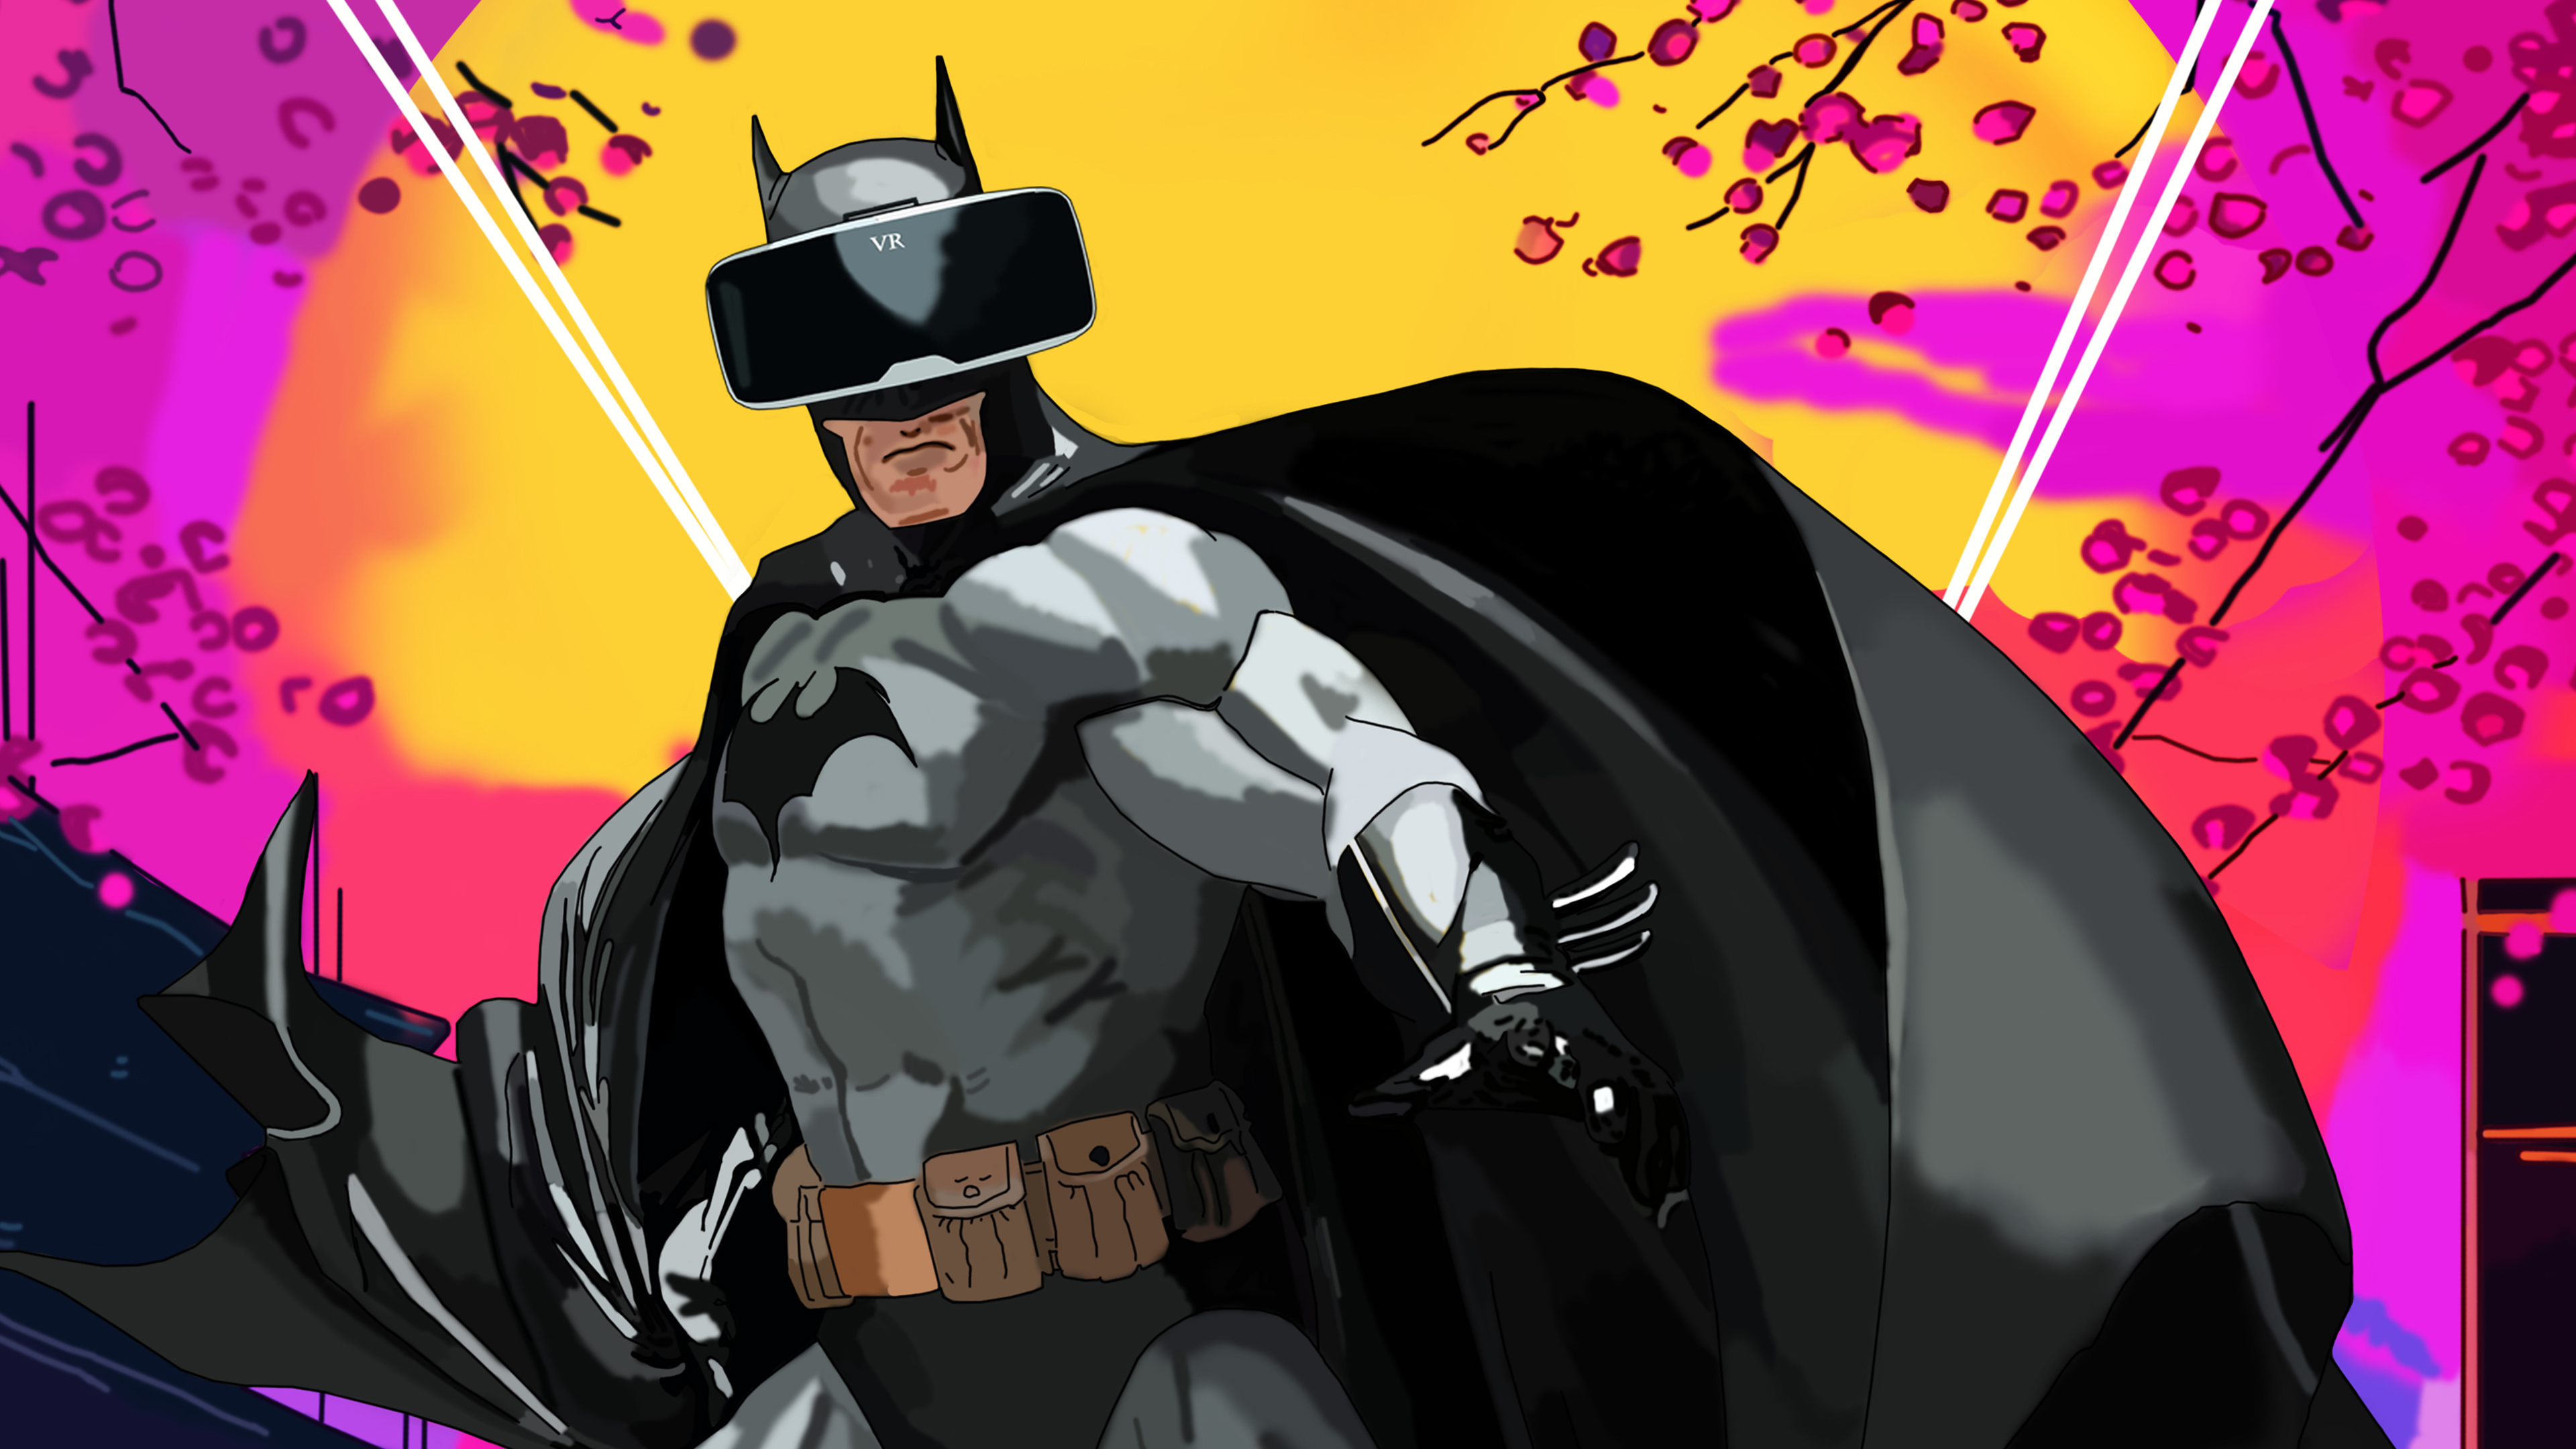 batman using vr headset 4k 1550510663 - Batman Using VR Headset 4k - superheroes wallpapers, hd-wallpapers, behance wallpapers, batman wallpapers, artwork wallpapers, artist wallpapers, 4k-wallpapers